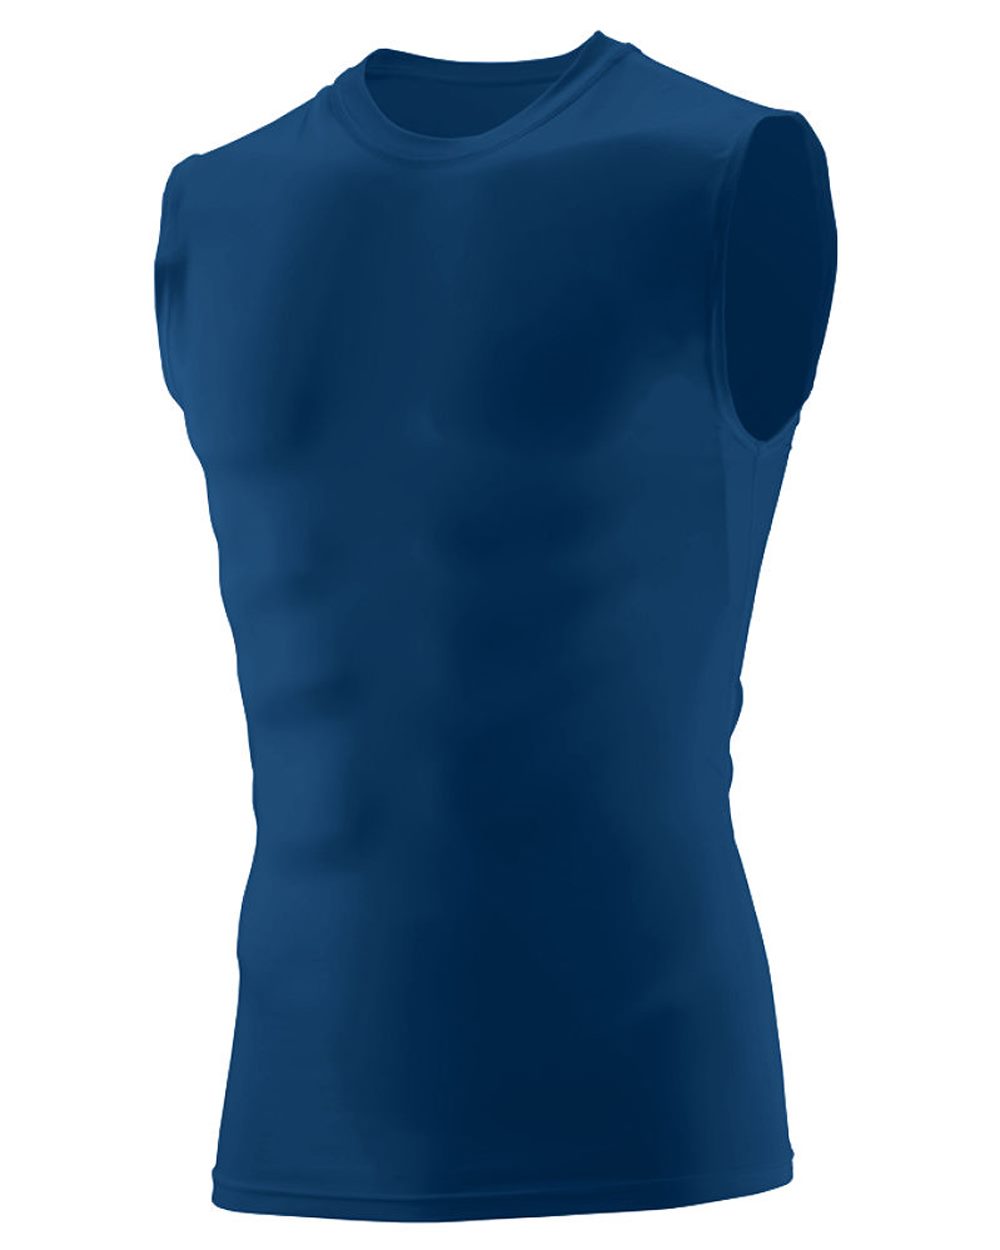 Augusta Sportswear 2602 - Camisa de compresión sin Hyperform